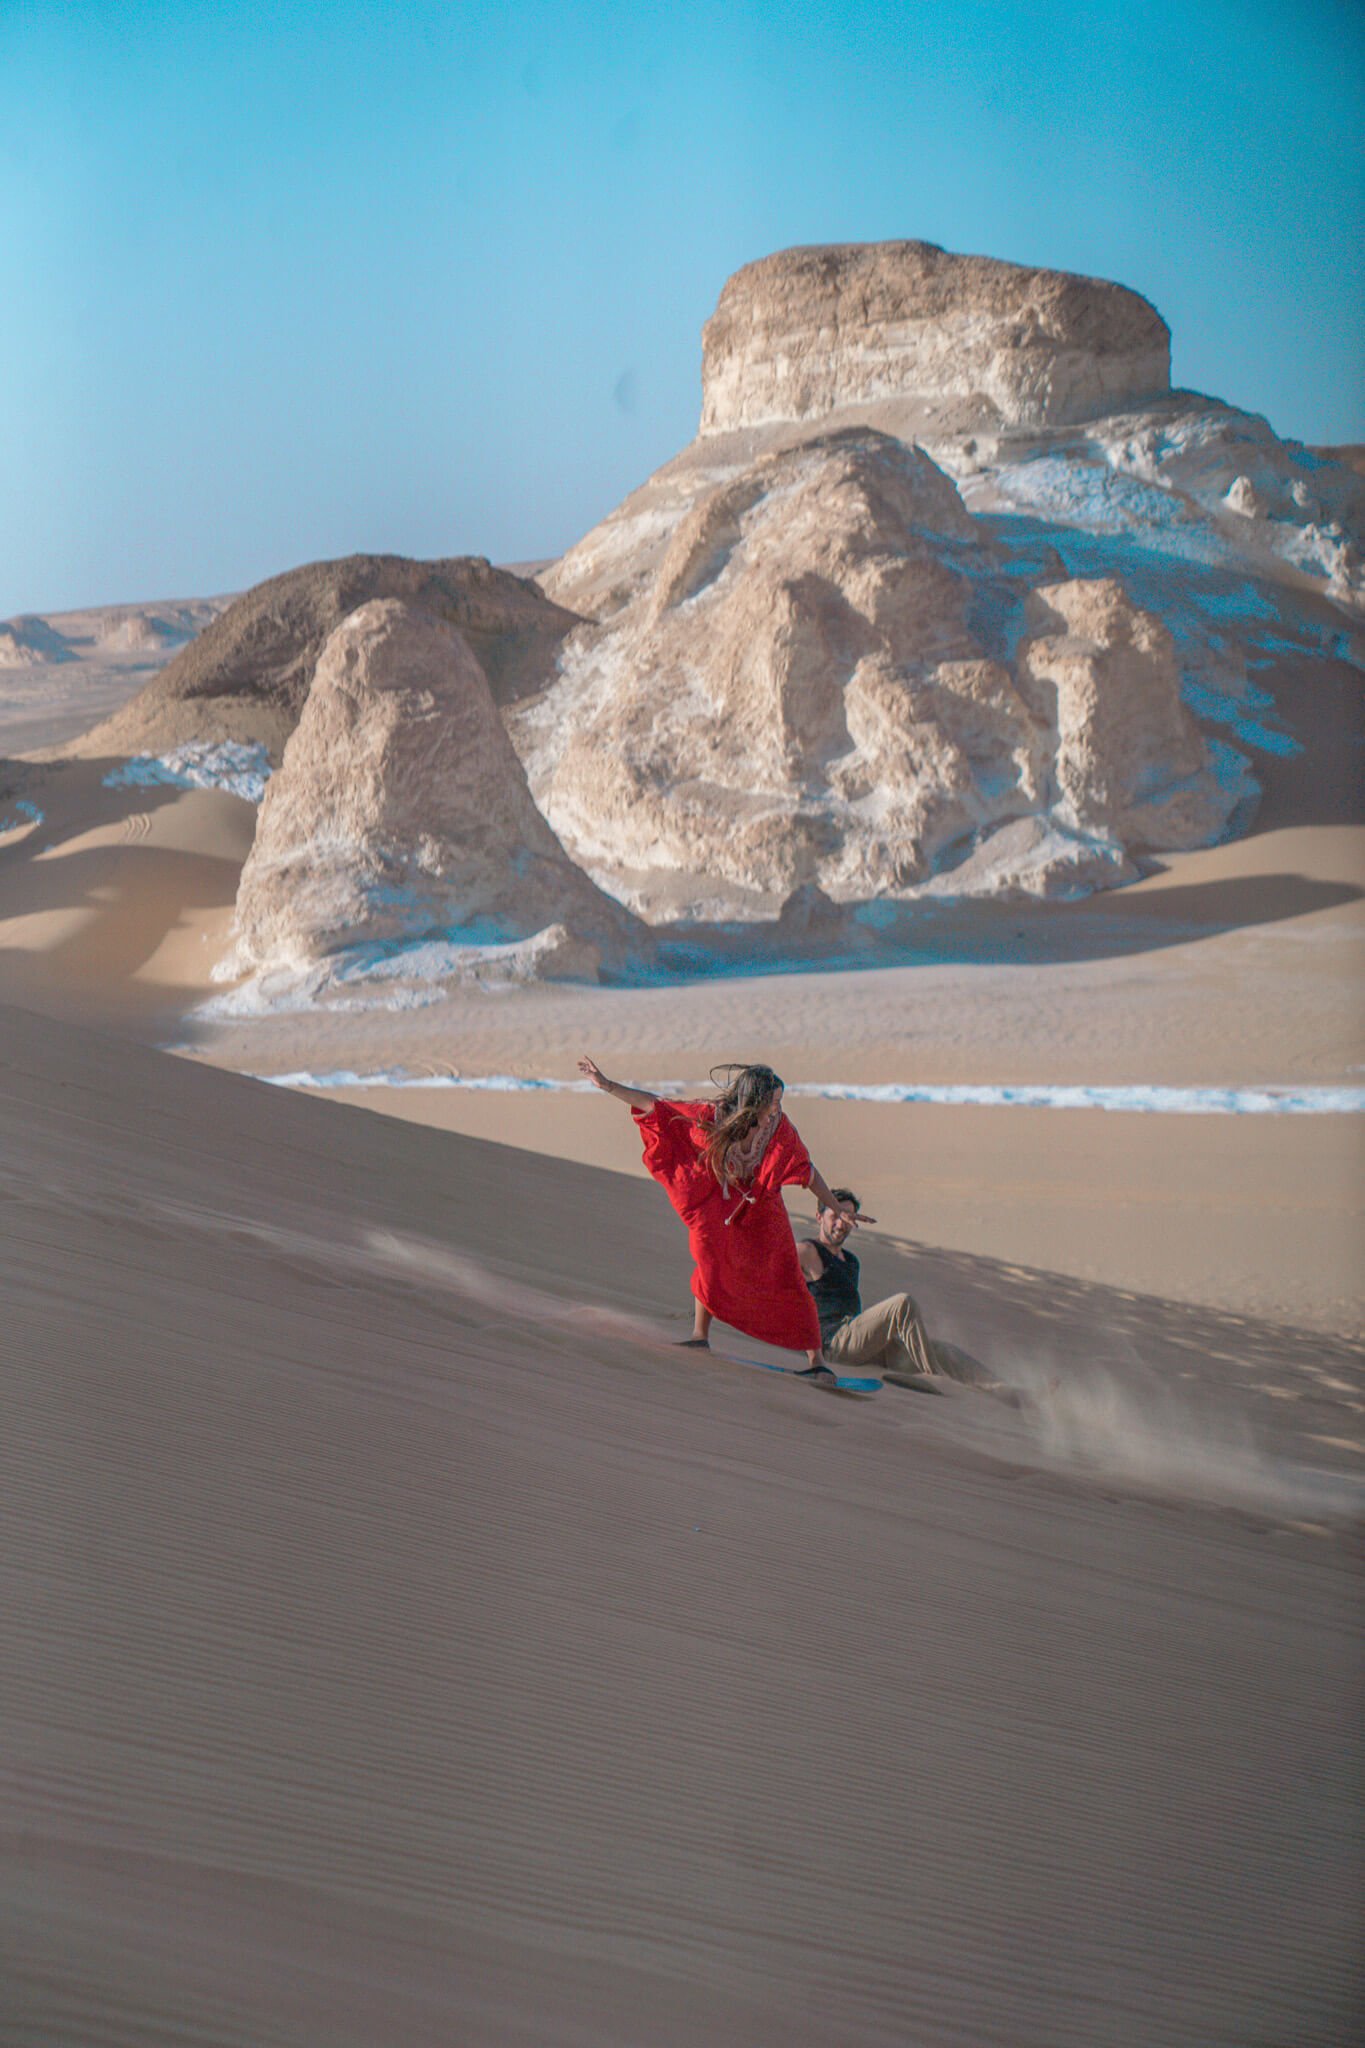 sand boarding on the sand dunes of the White desert in Egypt